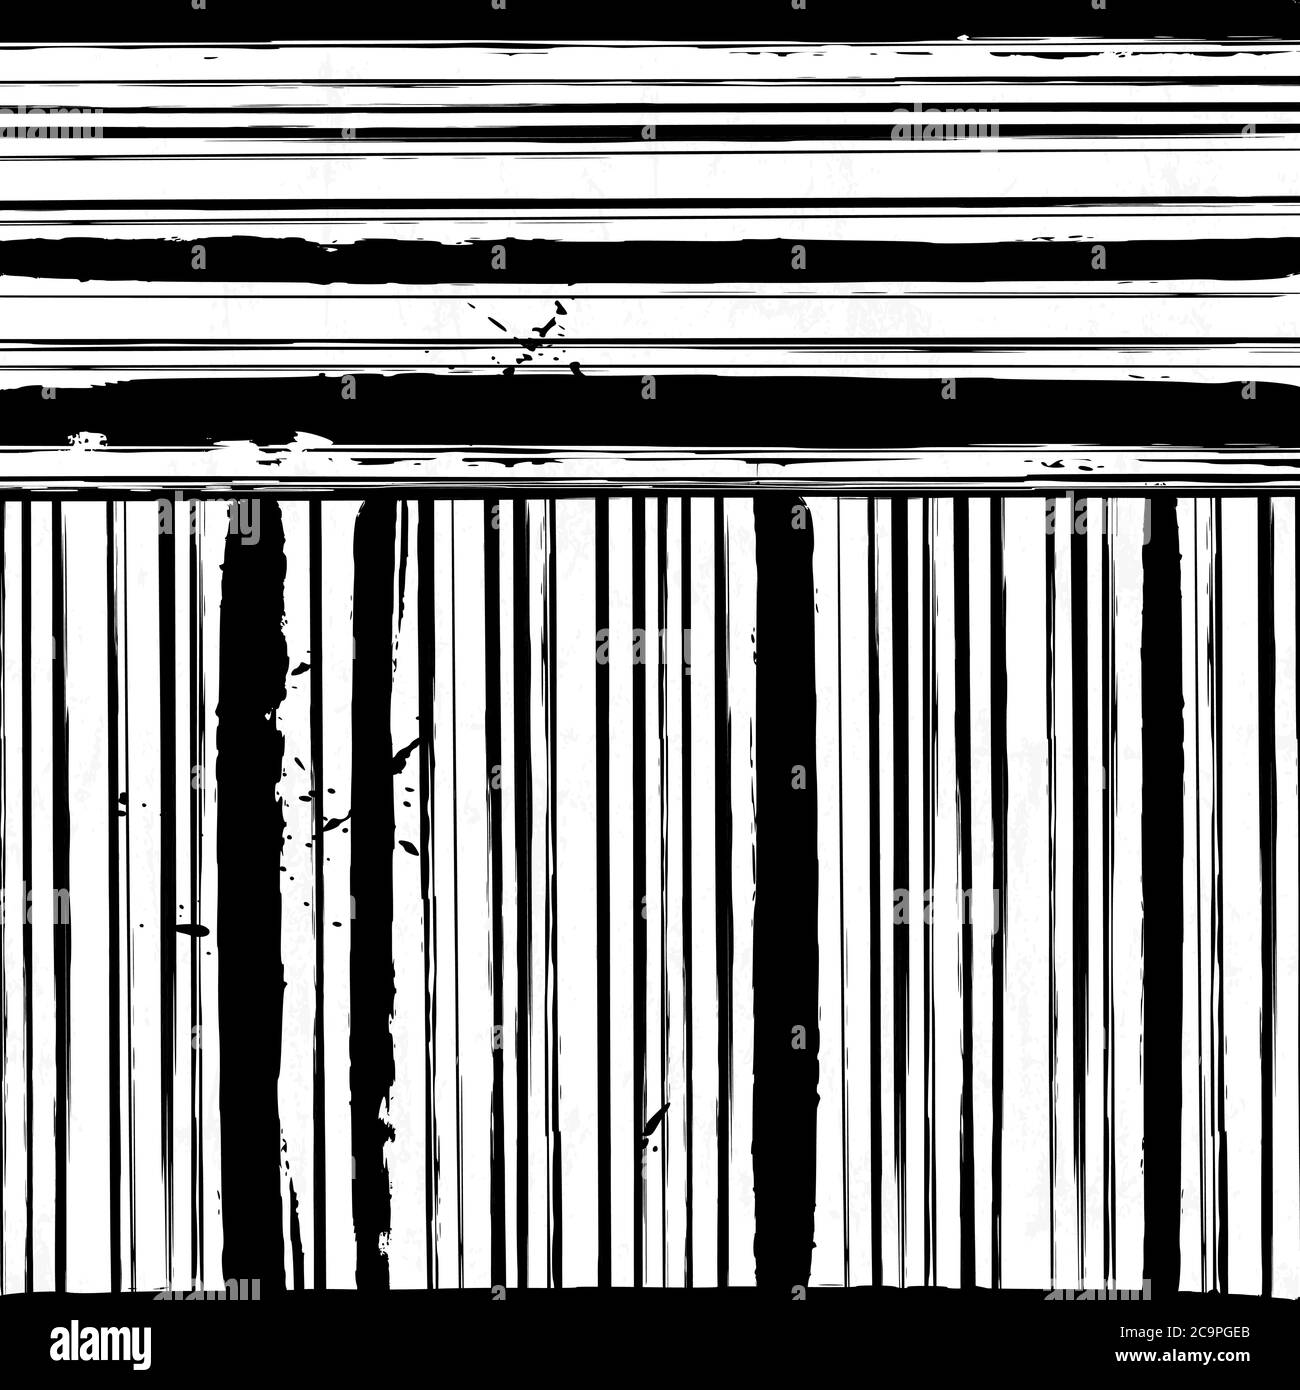 Abstraktes Hintergrundmuster, mit Streifen, Striche und Spritzer, schwarz und weiß, Stock Vektor